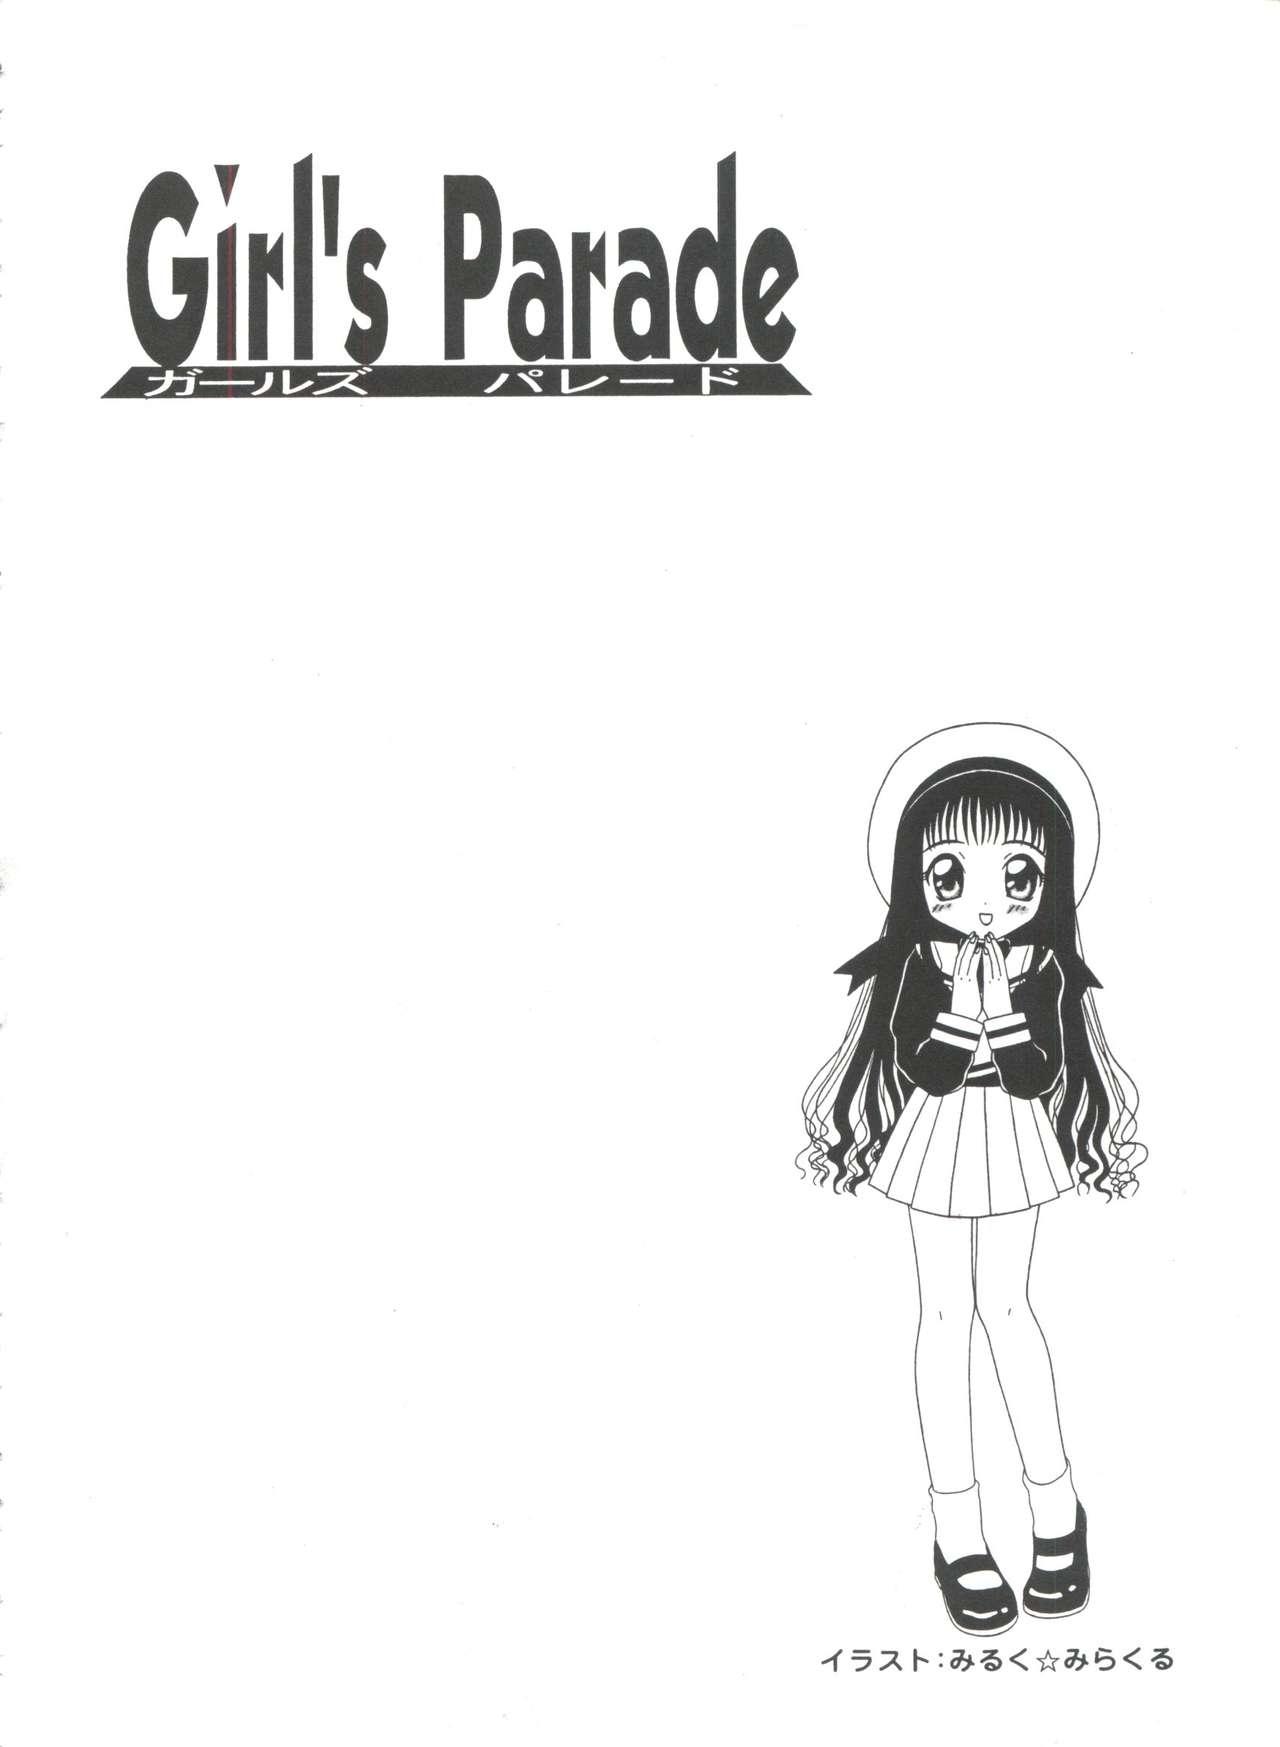 Girl's Parade 98 Take 7 62